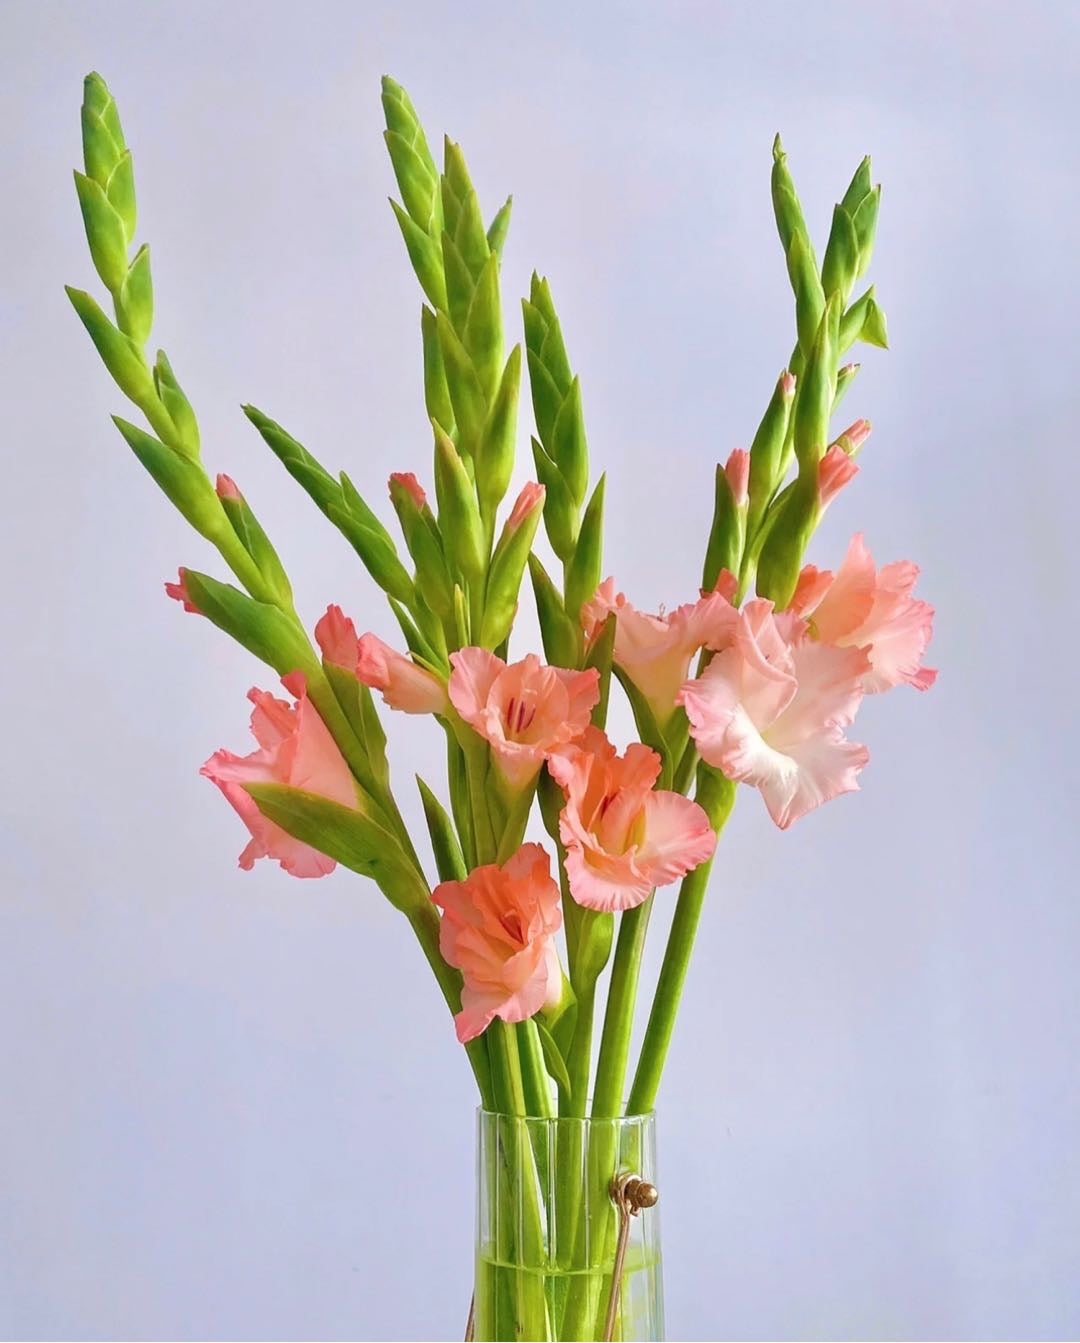 劍蘭是一種高貴而優雅的花卉，有著垂直生長的長莖和形狀獨特的花朵。劍蘭的花朵有許多種顏色，包括粉色、紫色和黃色。粉色劍蘭象徵著優雅和溫柔，紫色則象徵著神秘和高貴，黃色則象徵著快樂和幸福。劍蘭的芳香讓它成為了一種熱門的花卉，用於製作花束和花環。它們是送給摯愛的理想花卉，也可以用於婚禮和其他正式場合。立即下單，讓劍蘭的美麗和優雅，為你帶來尊貴和典雅。